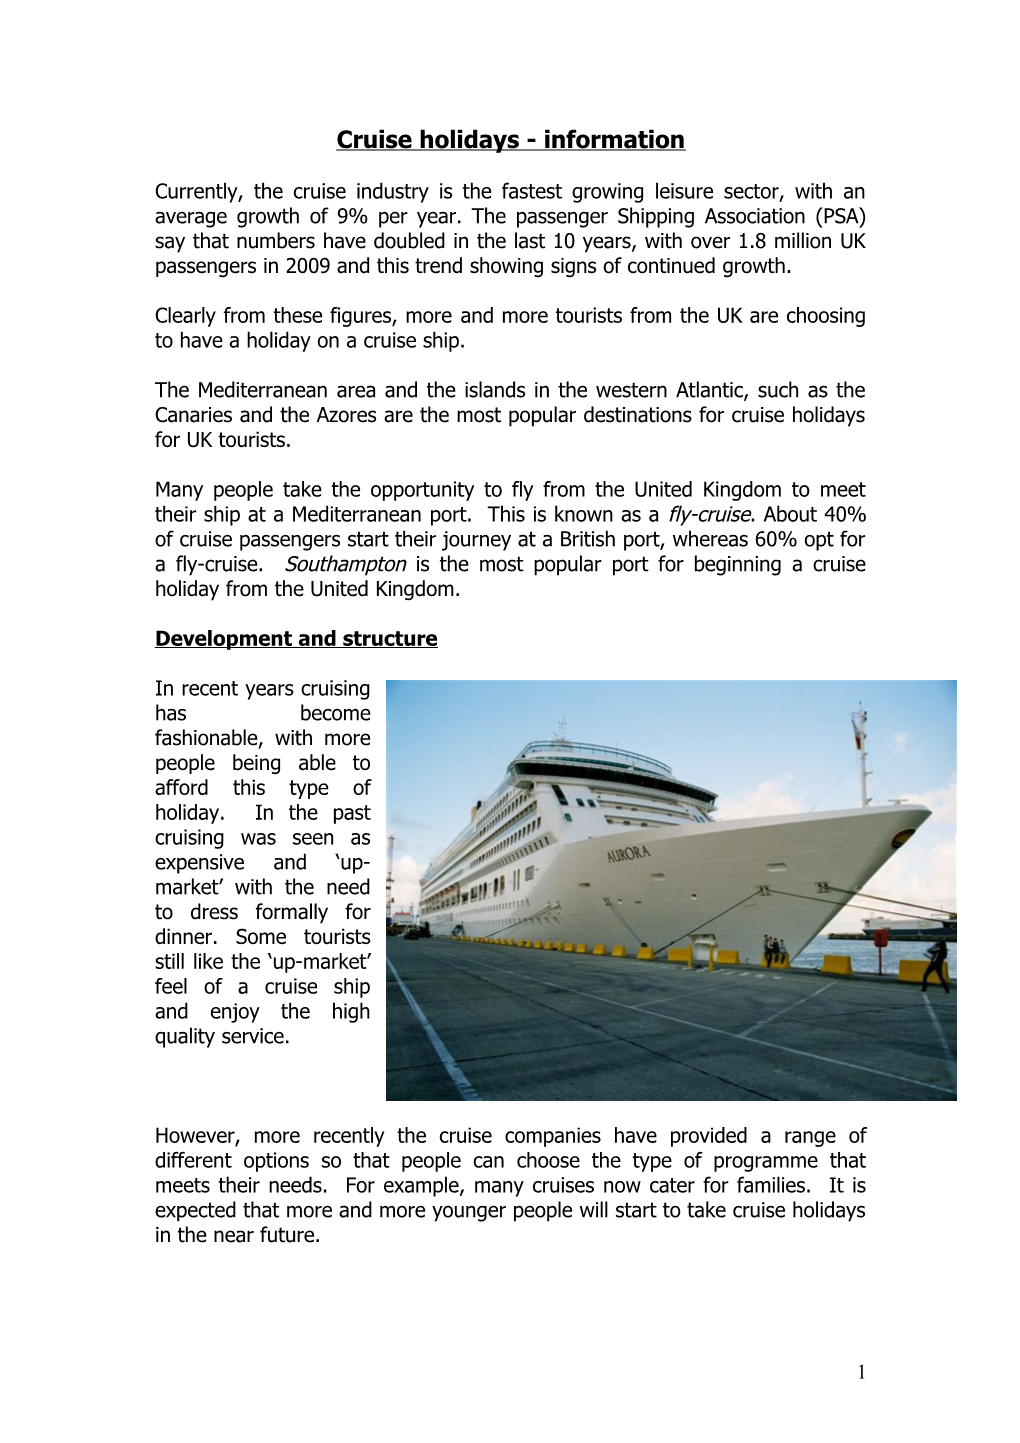 Cruise Holidays - Information